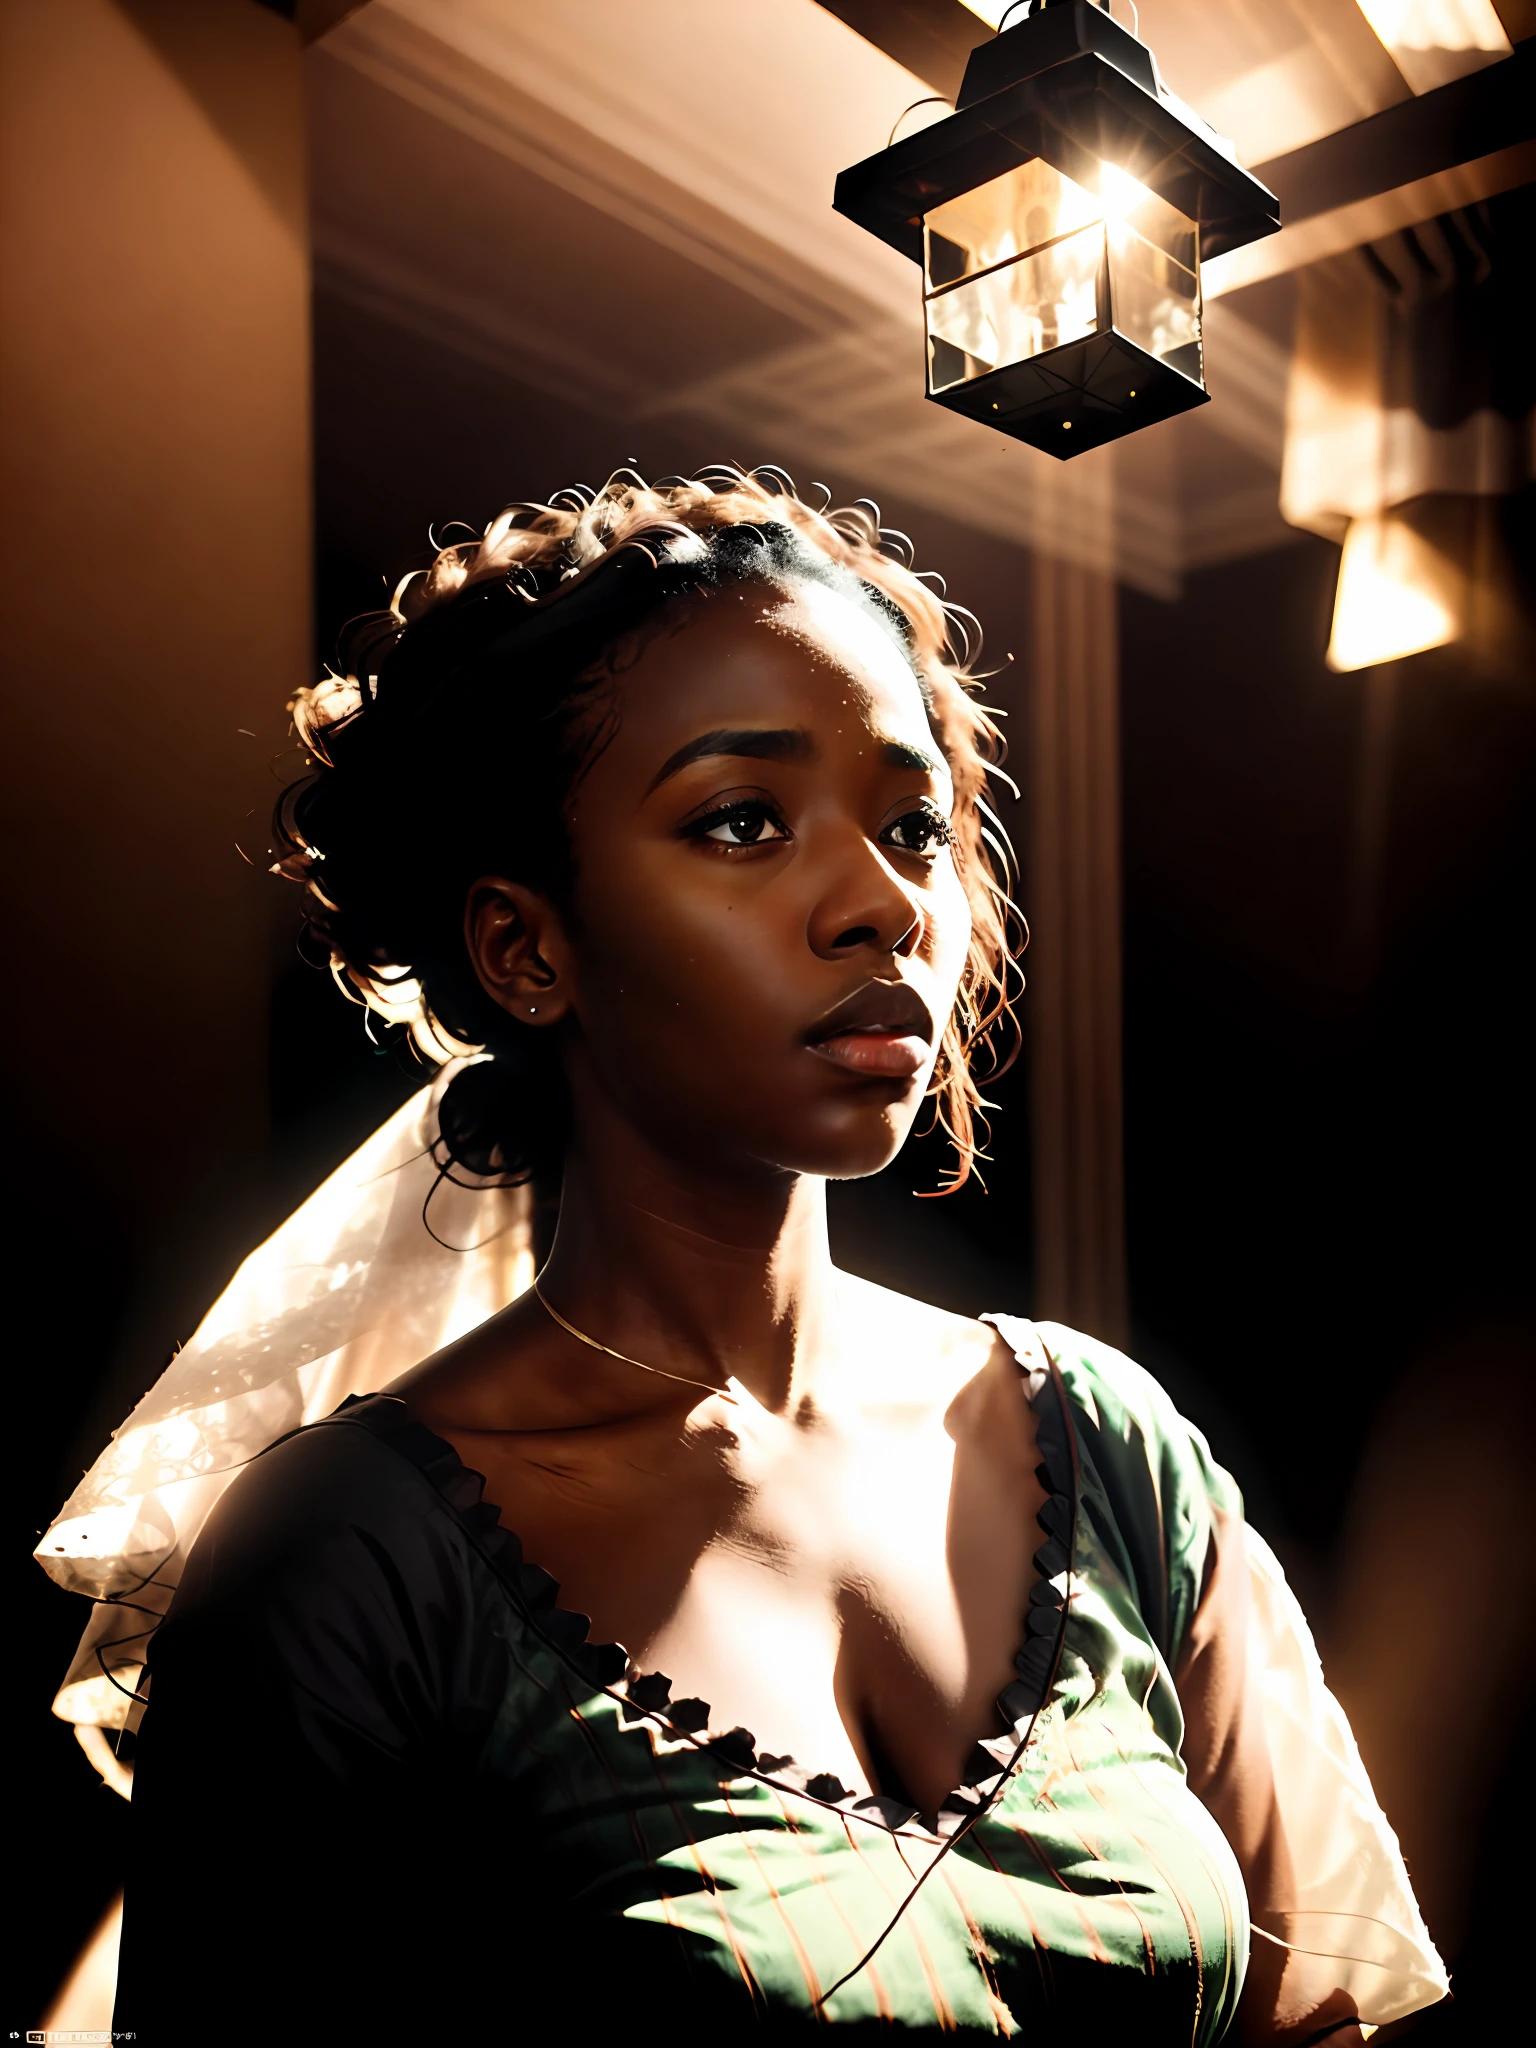 analoge fotografische hoch detaillierte filmische von einem Geist schöne ((dunkelhäutig)) Afrikanische Frau in einer Wohnung, in weiß gekleidet, bauhaus-esque, hyperdetailliert, bedrohlich, ätherisch, dramatische Beleuchtung, sanfter Kontrast, verblasst